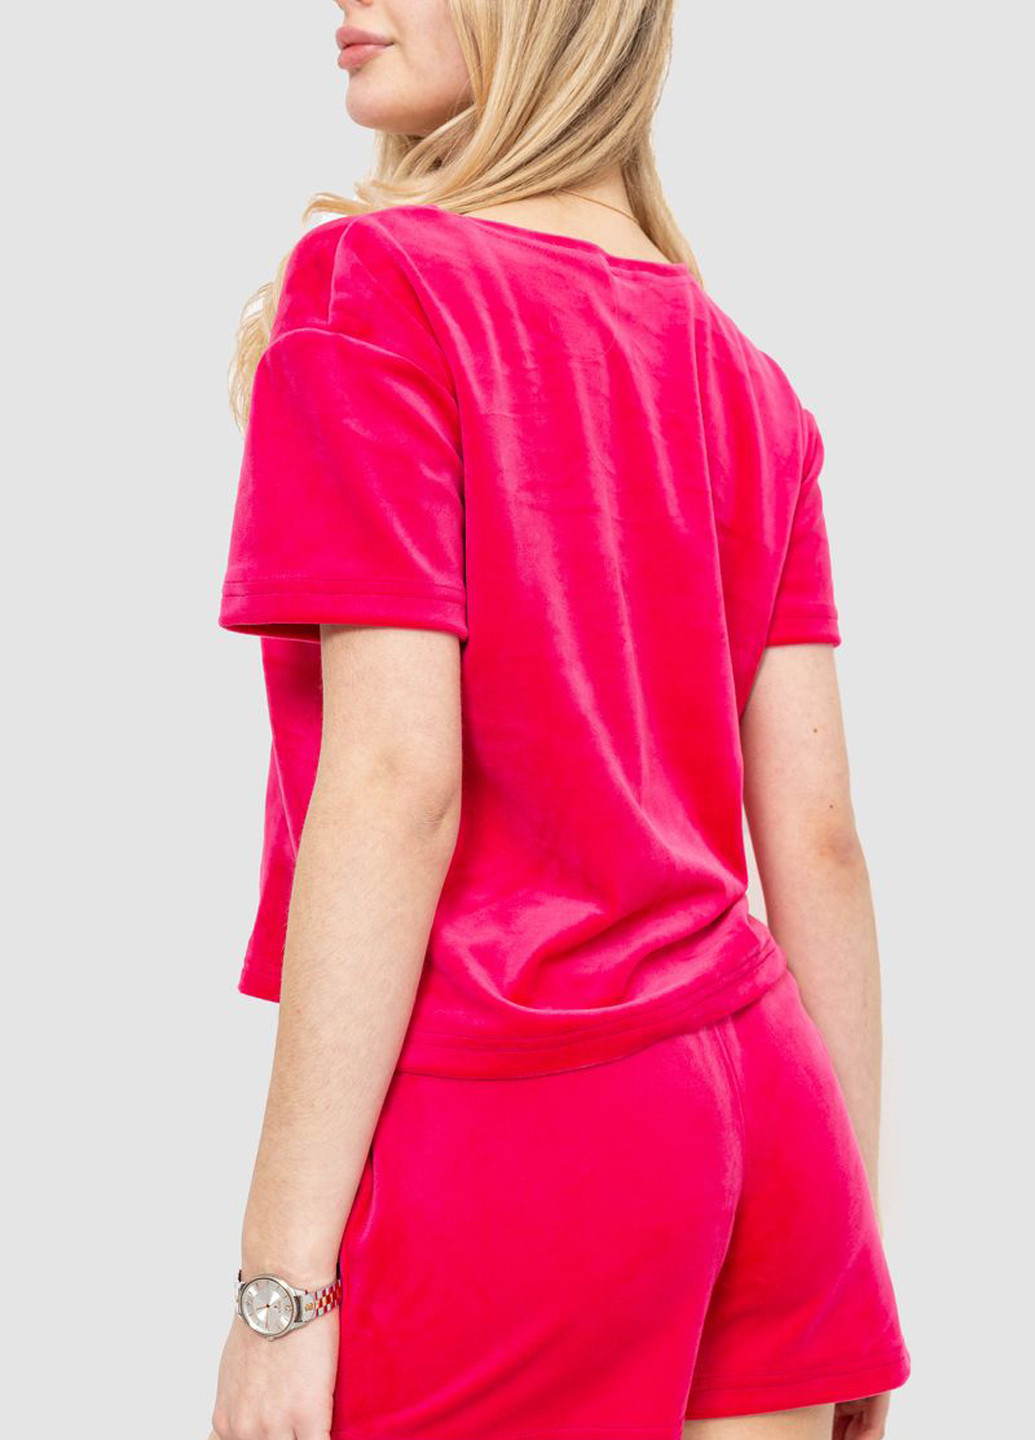 Розовая всесезон пижама (футболка, шорты) футболка + шорты Ager